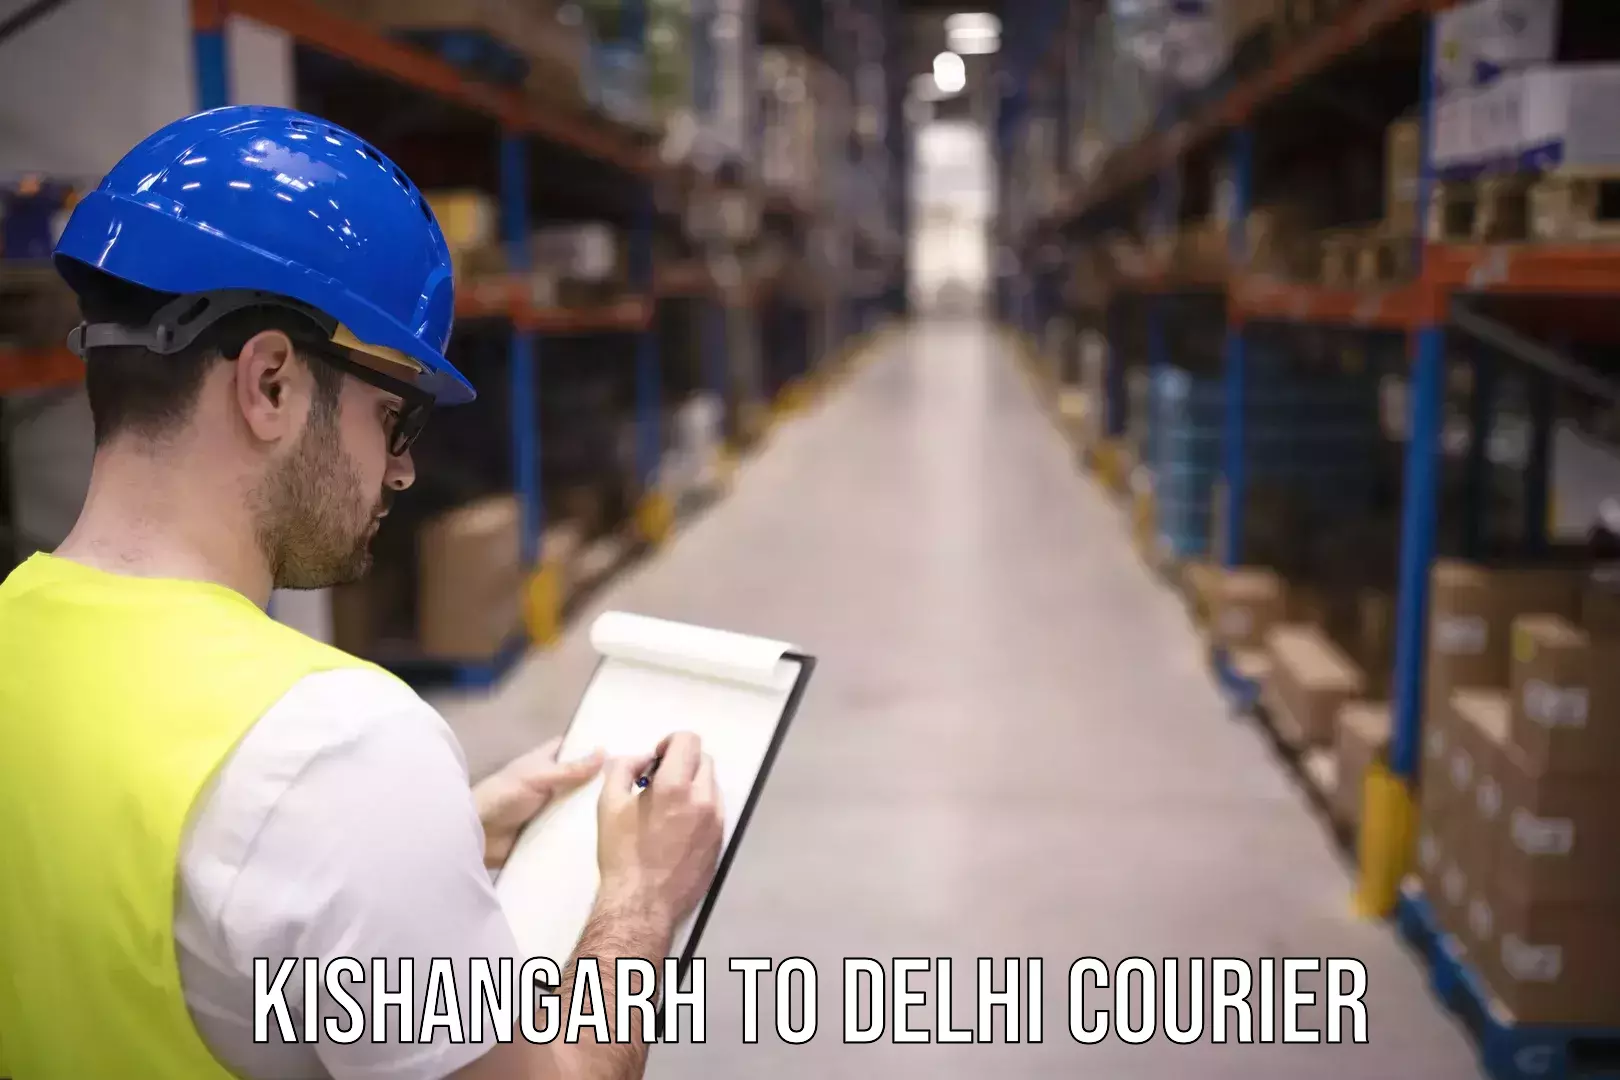 Premium courier solutions Kishangarh to Jawaharlal Nehru University New Delhi